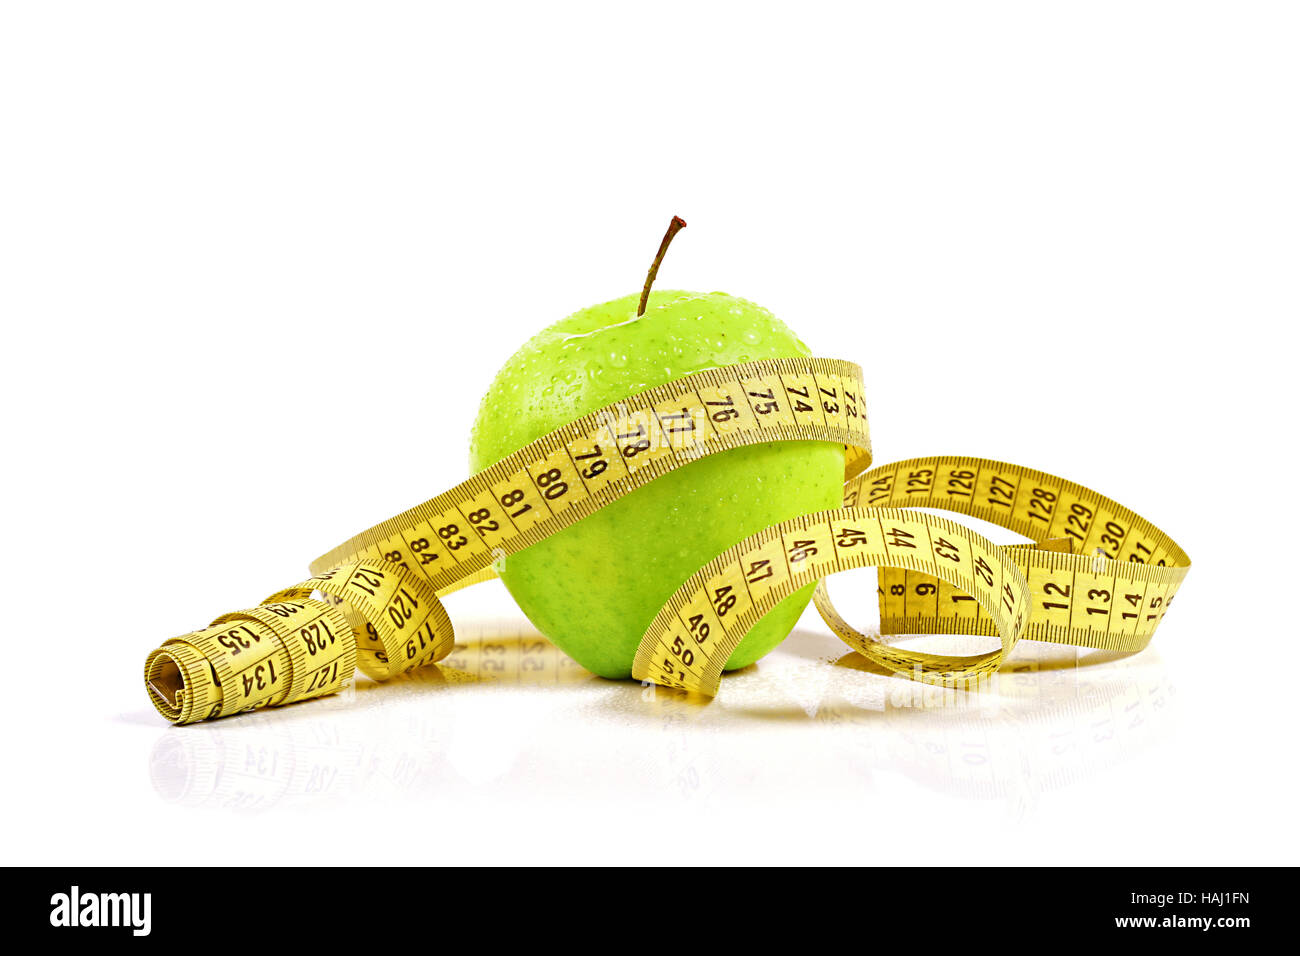 verlieren Sie Gewichtskonzept, Apfel mit Maßband Stockfoto